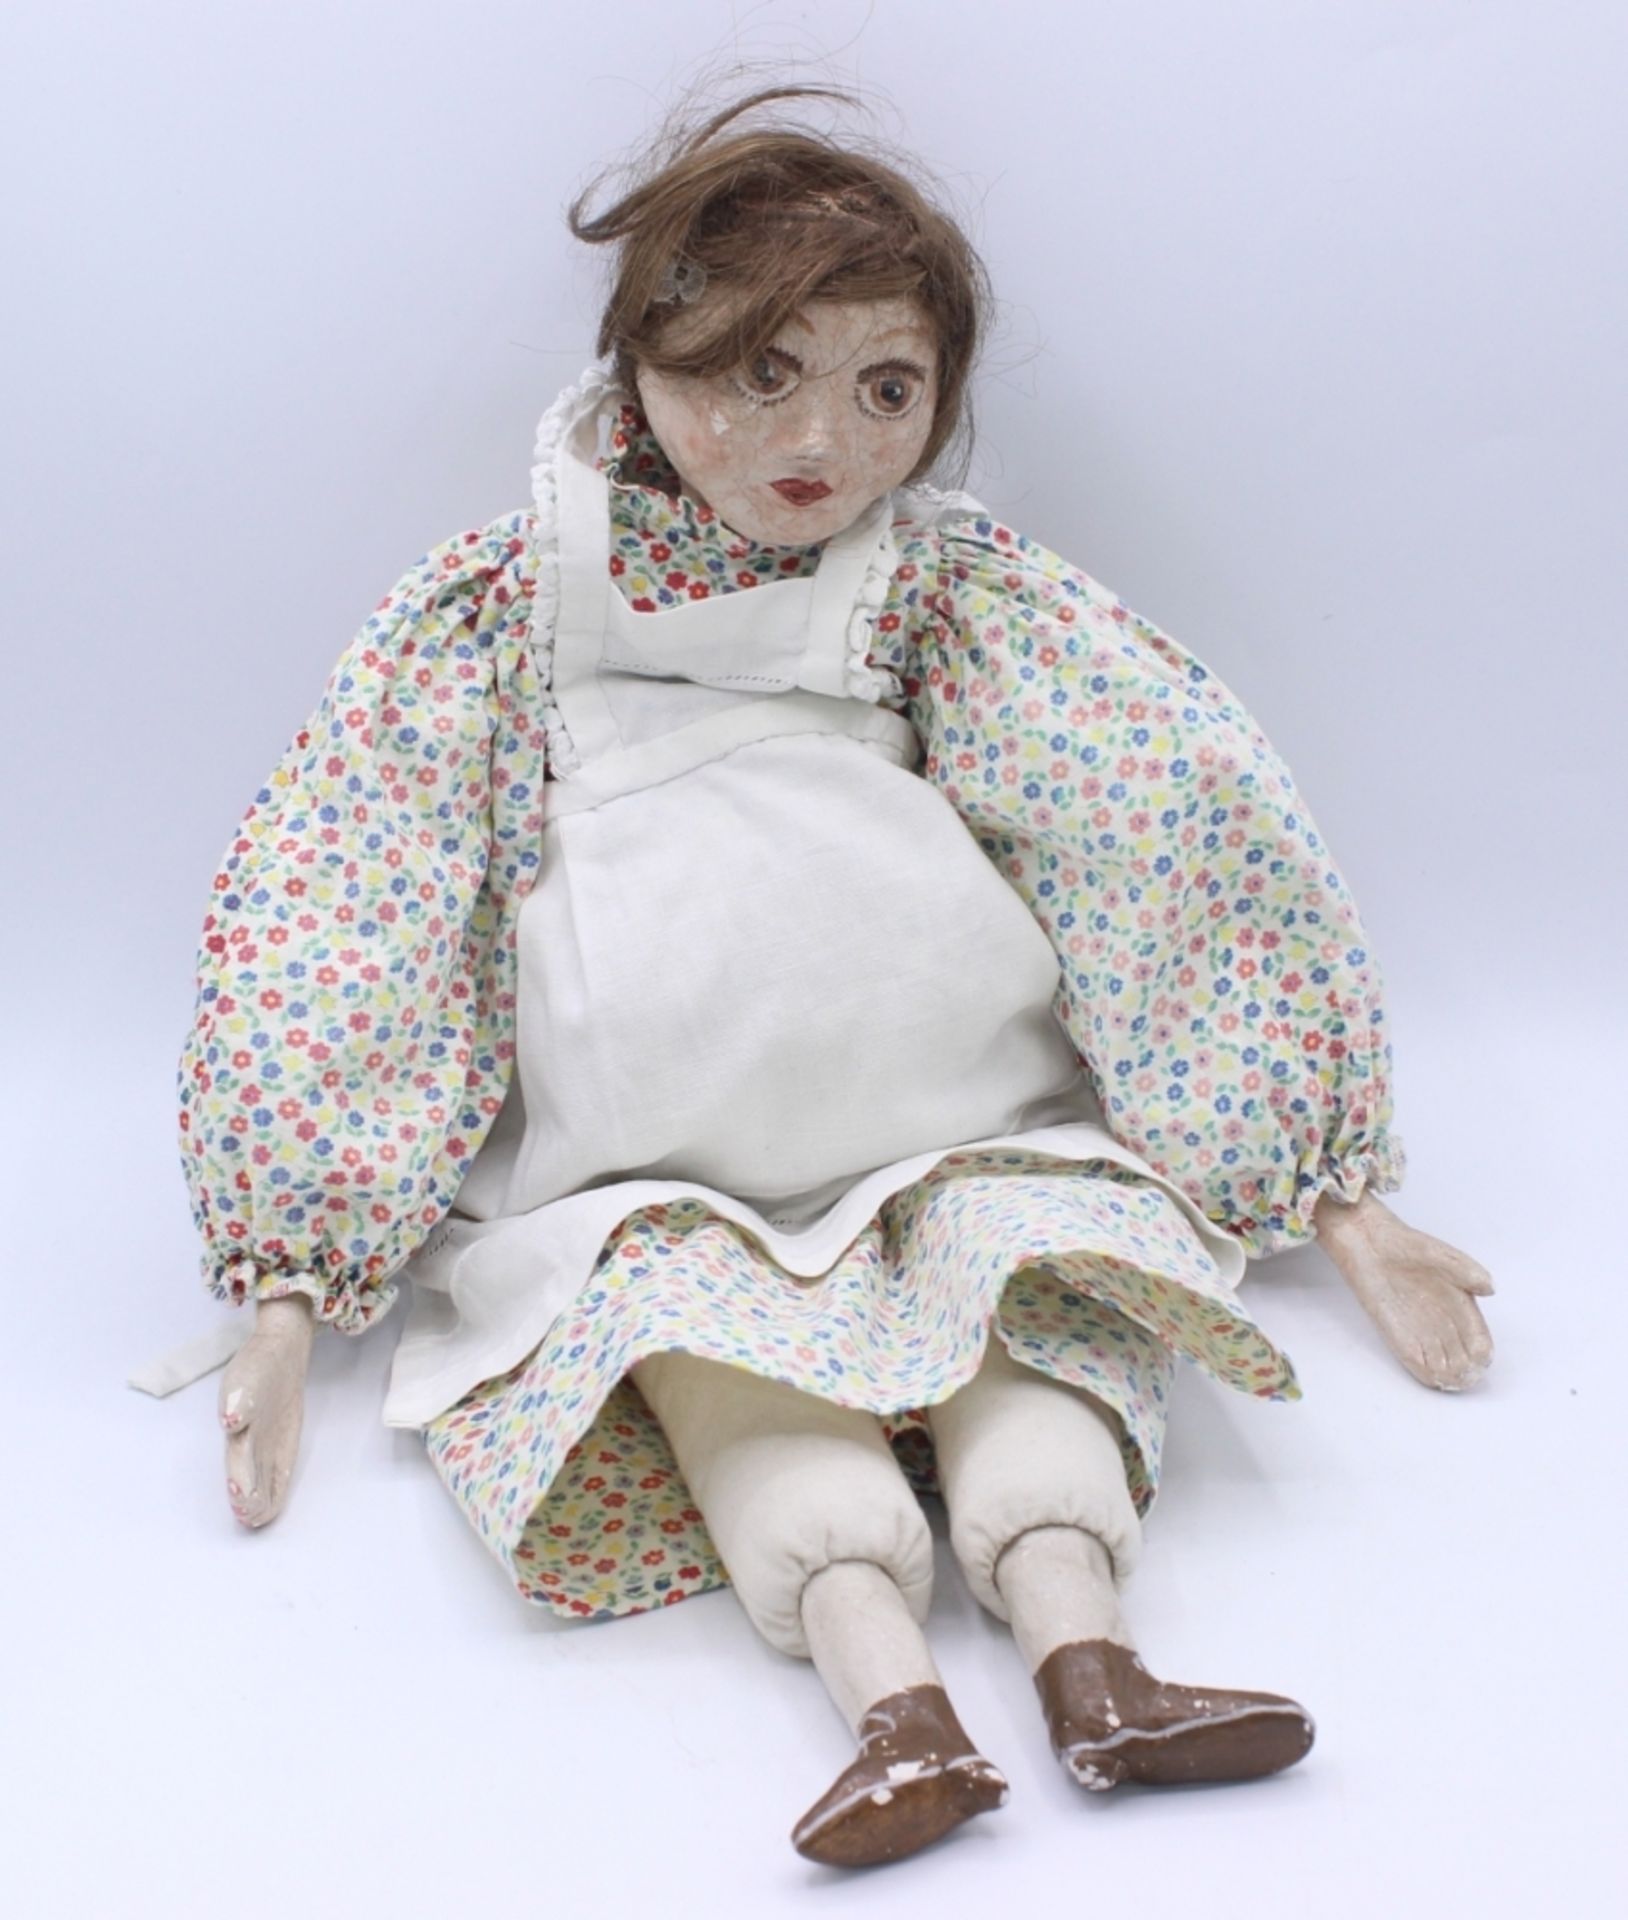 Puppe - Charlotte Münzer (Rosenheim XX.Jahrhundert) Handarbeit, Ton/Stoff, teilweise bemalt, Länge